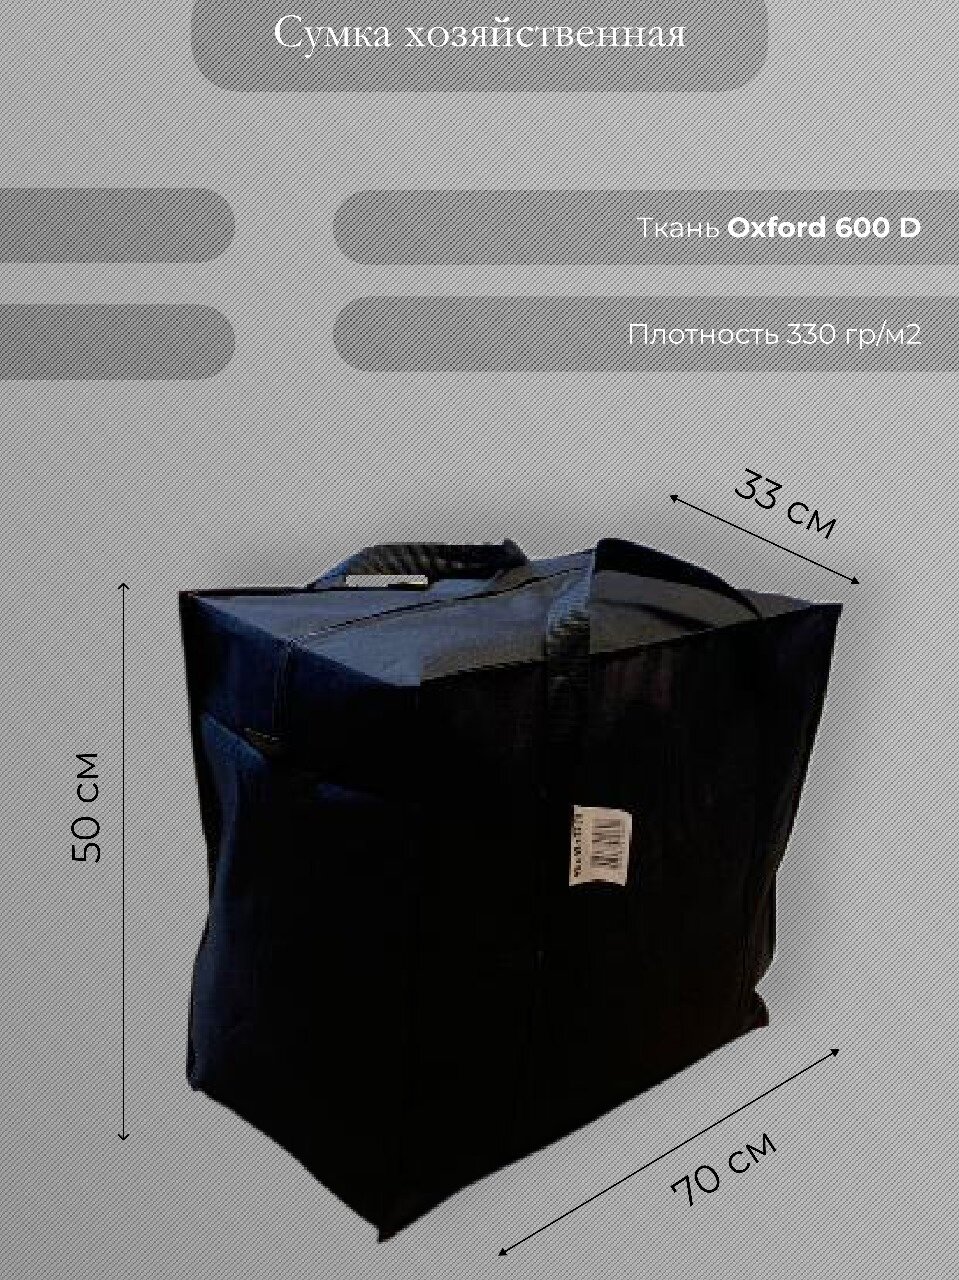 Сумка-баул Сумка хозяйственная "Кристалл" Особопрочная, водонепроницаемая, материал Oxford 600D, размер 70 х 50 х 33 см